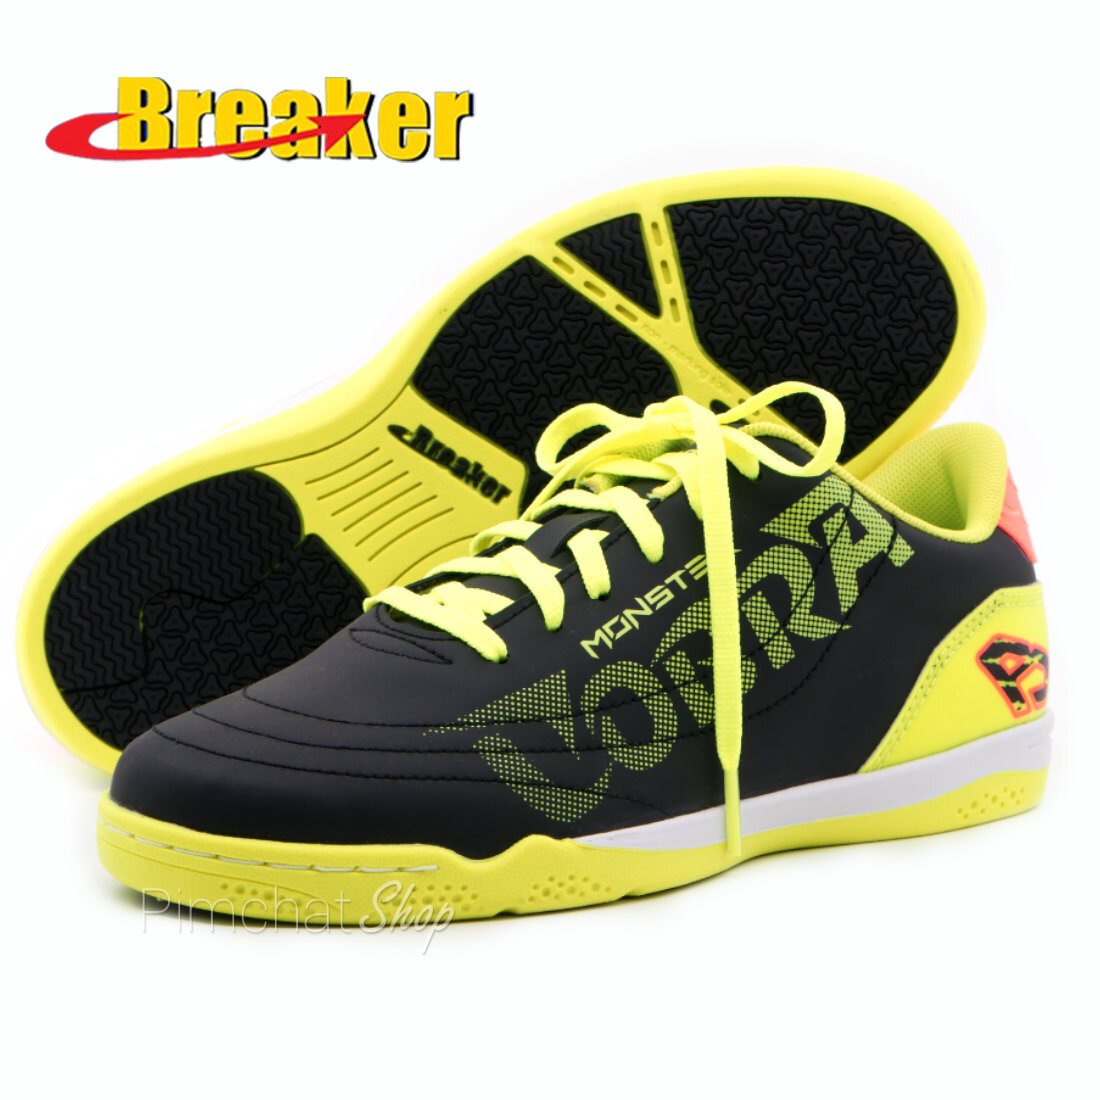 Breaker รองเท้าฟุตซอล รองเท้ากีฬา รุ่น BK1214 (สีดำเหลือง)